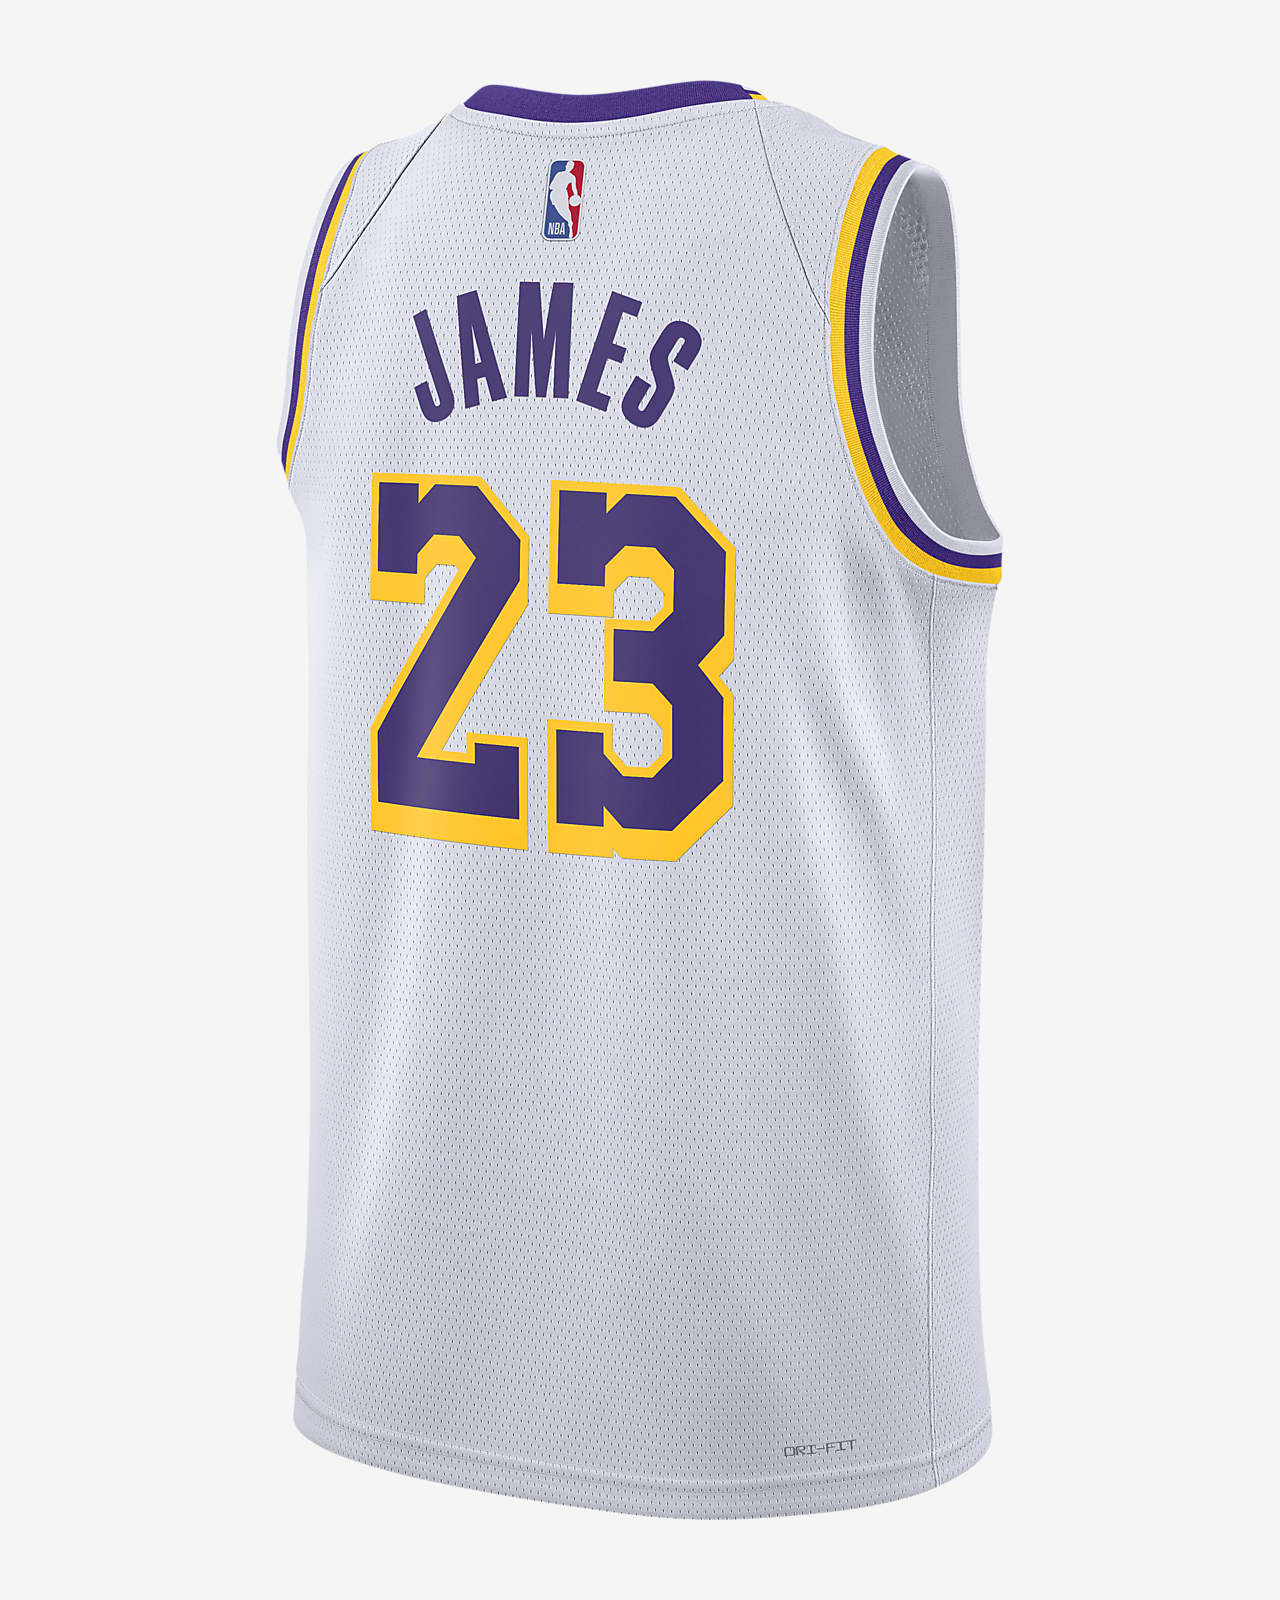 Los Angeles Lakers. Nike US